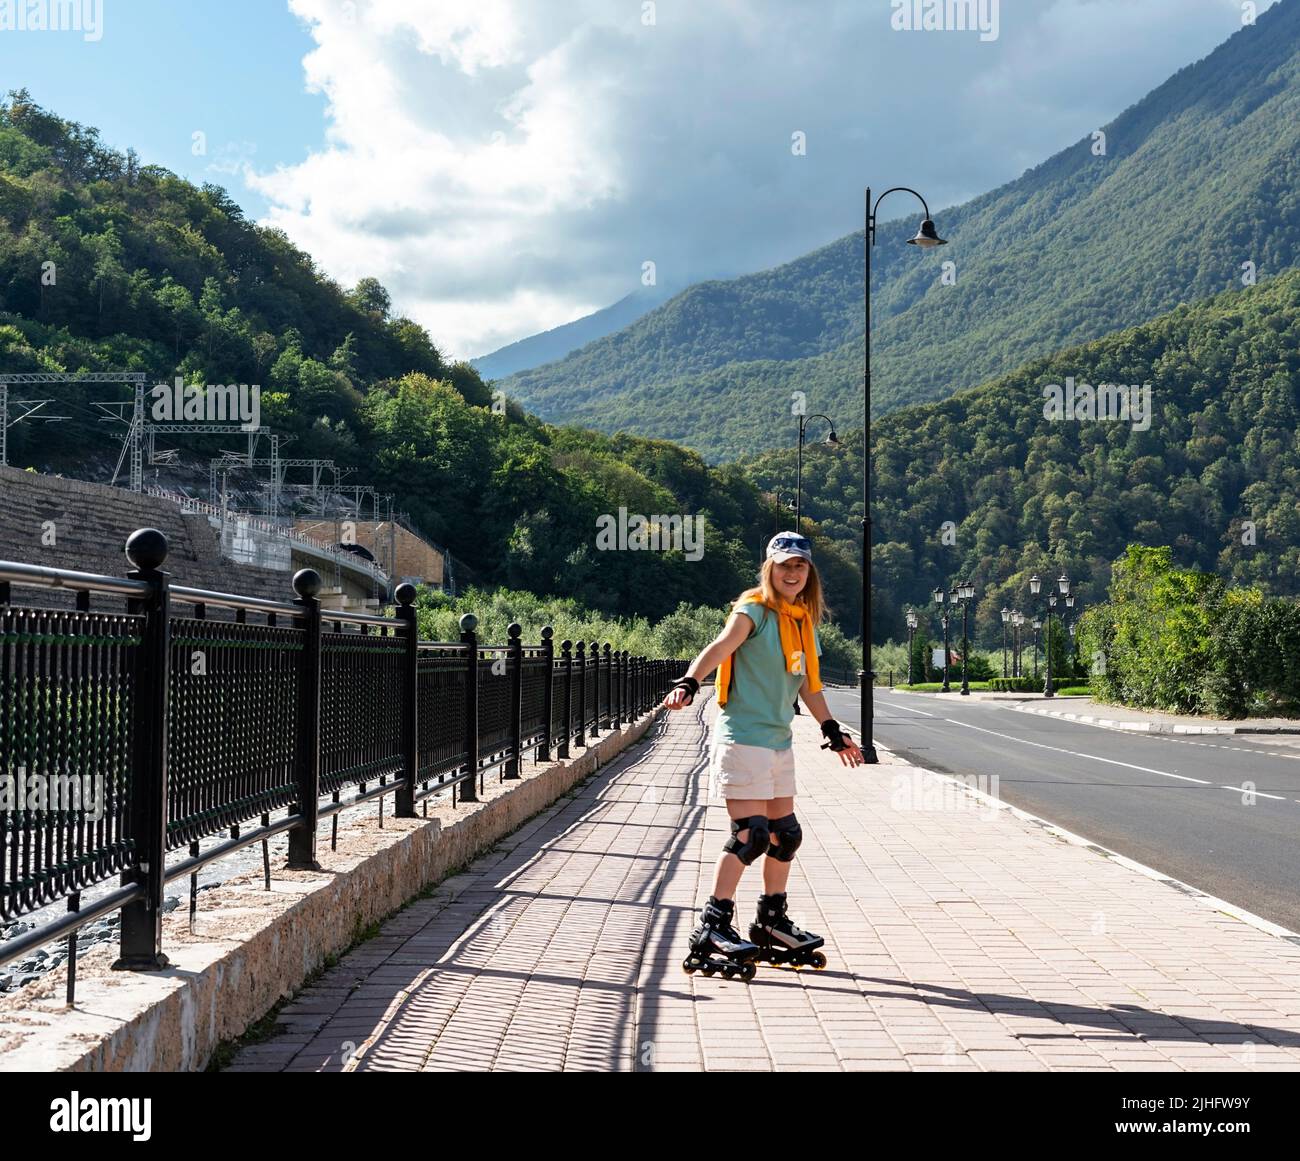 Glückliche junge Frau in Schutzausrüstung Reiten auf Rollschuhe entlang Böschung im Sommer aktiven Lebensstil, Outdoor-Aktivitäten, Rollschuhlaufen Stockfoto